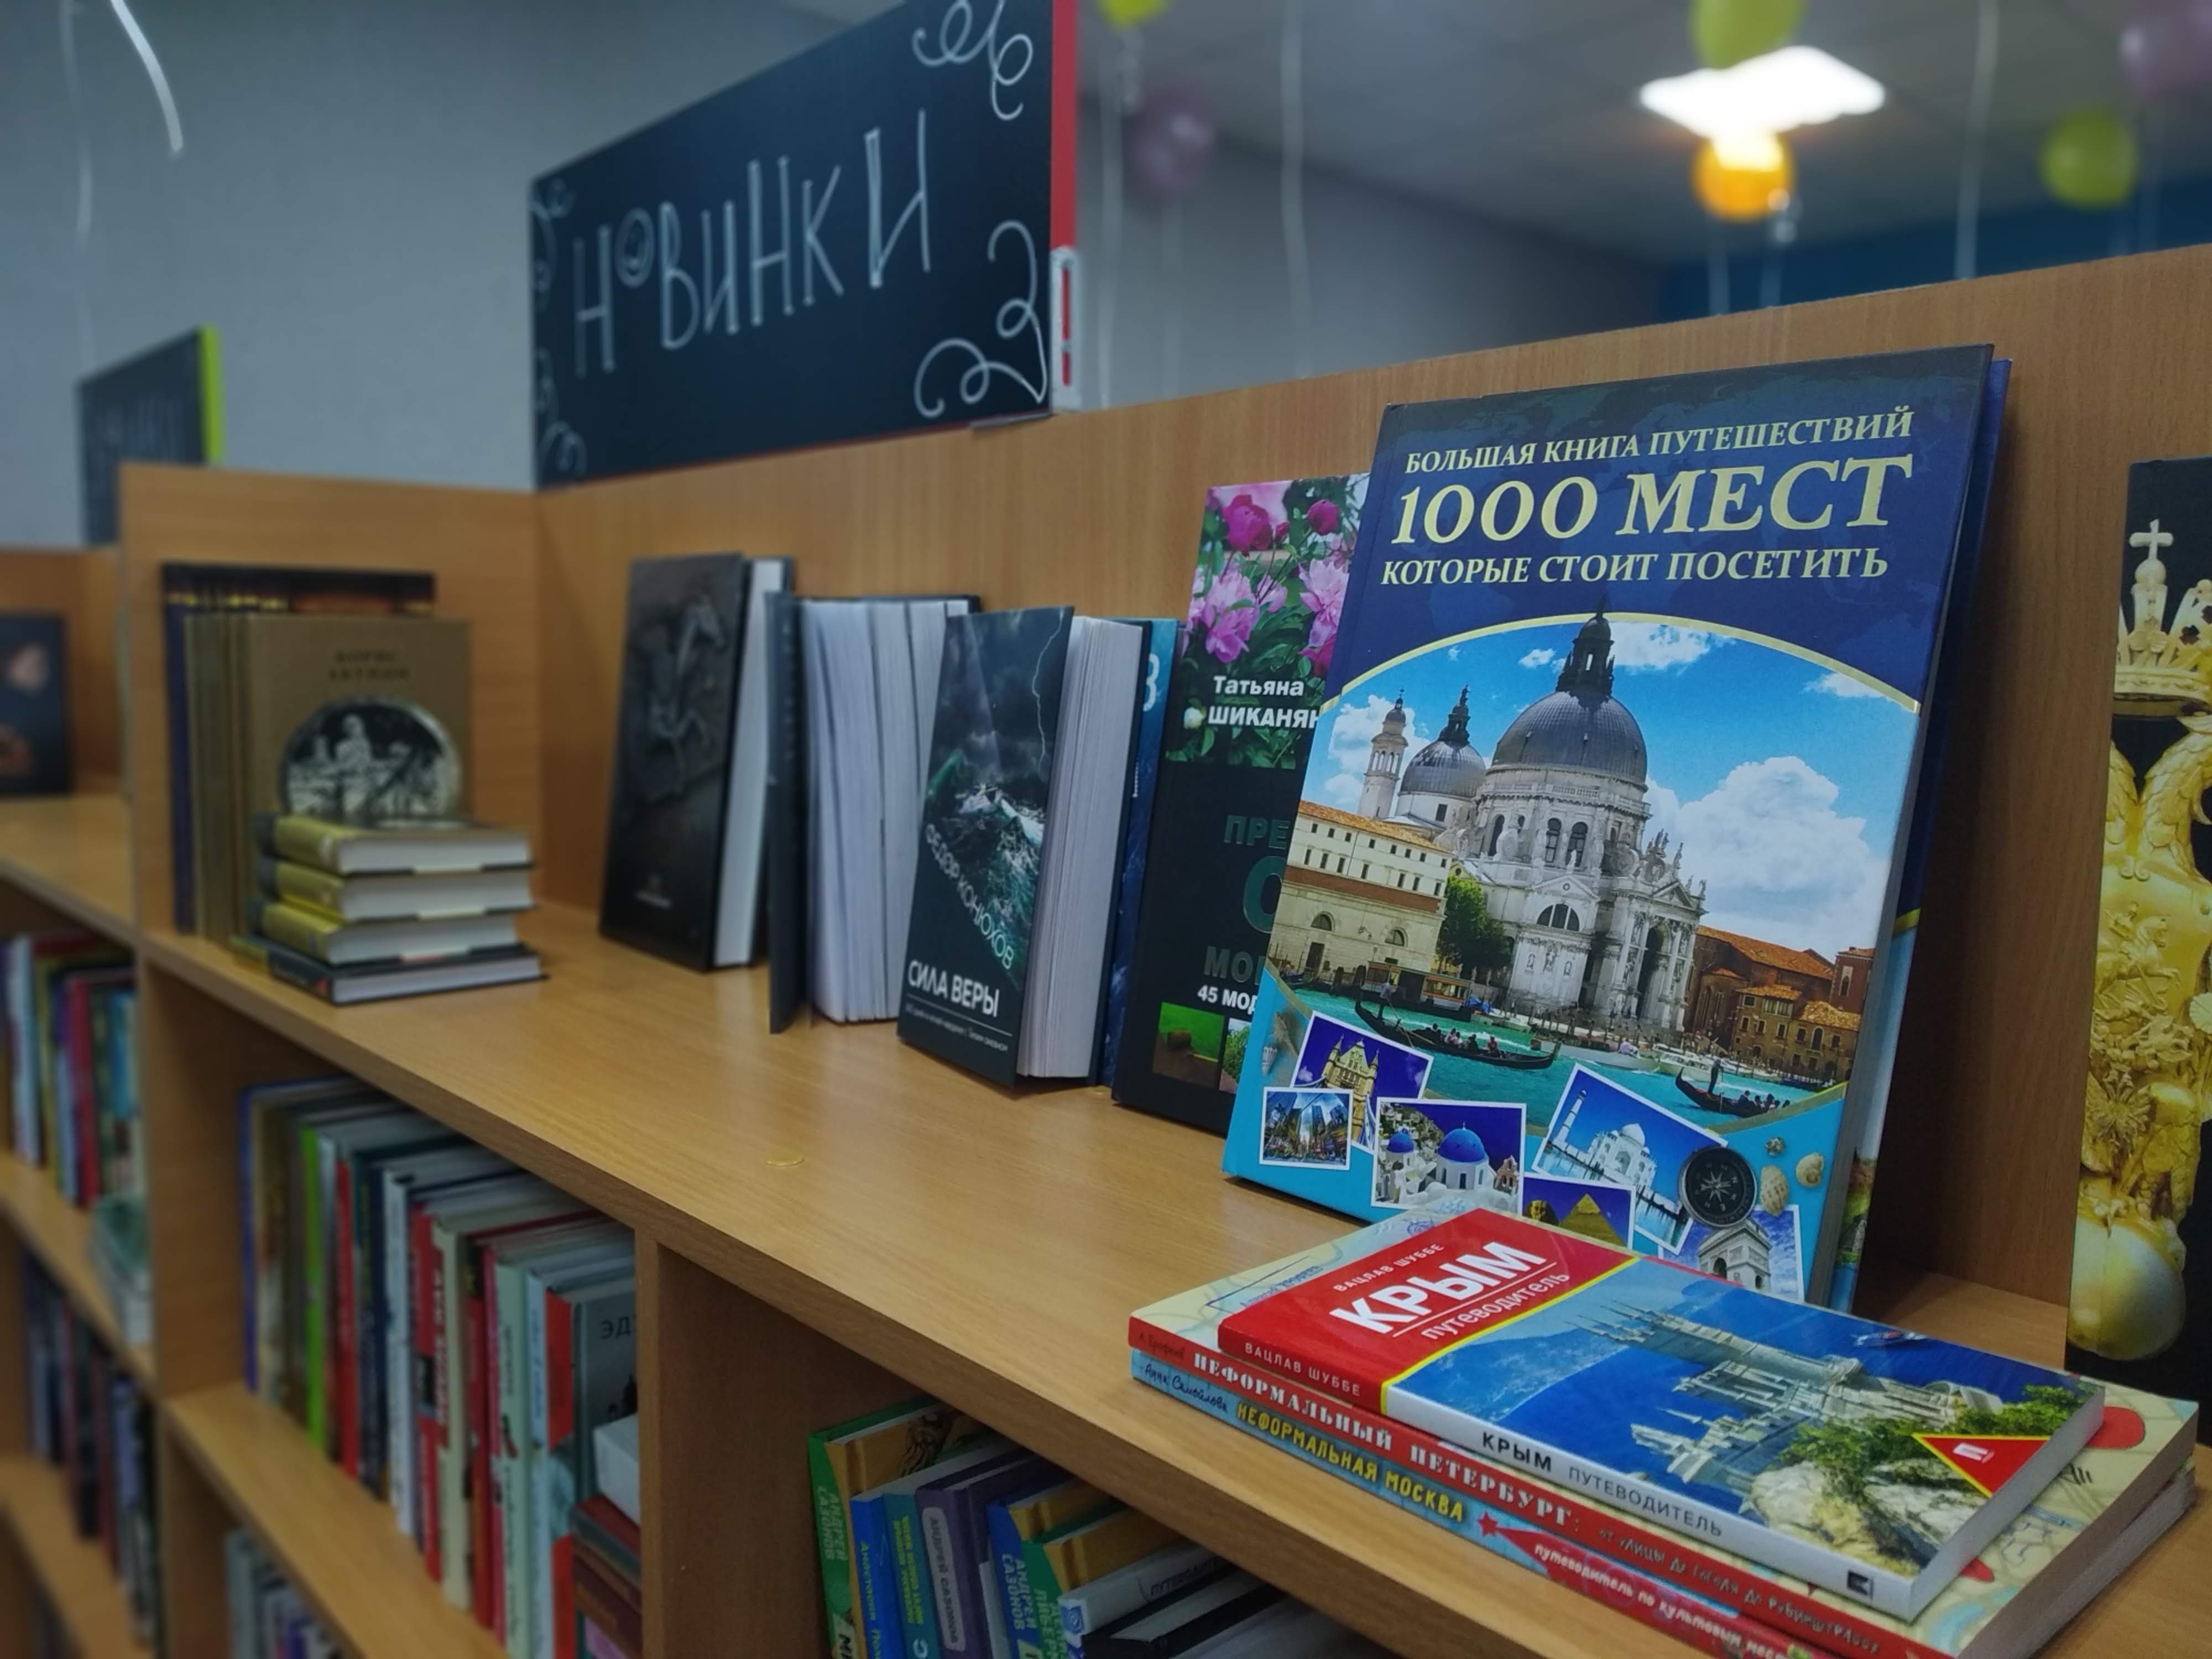 

В Ижевске откроется вторая модельная библиотека

